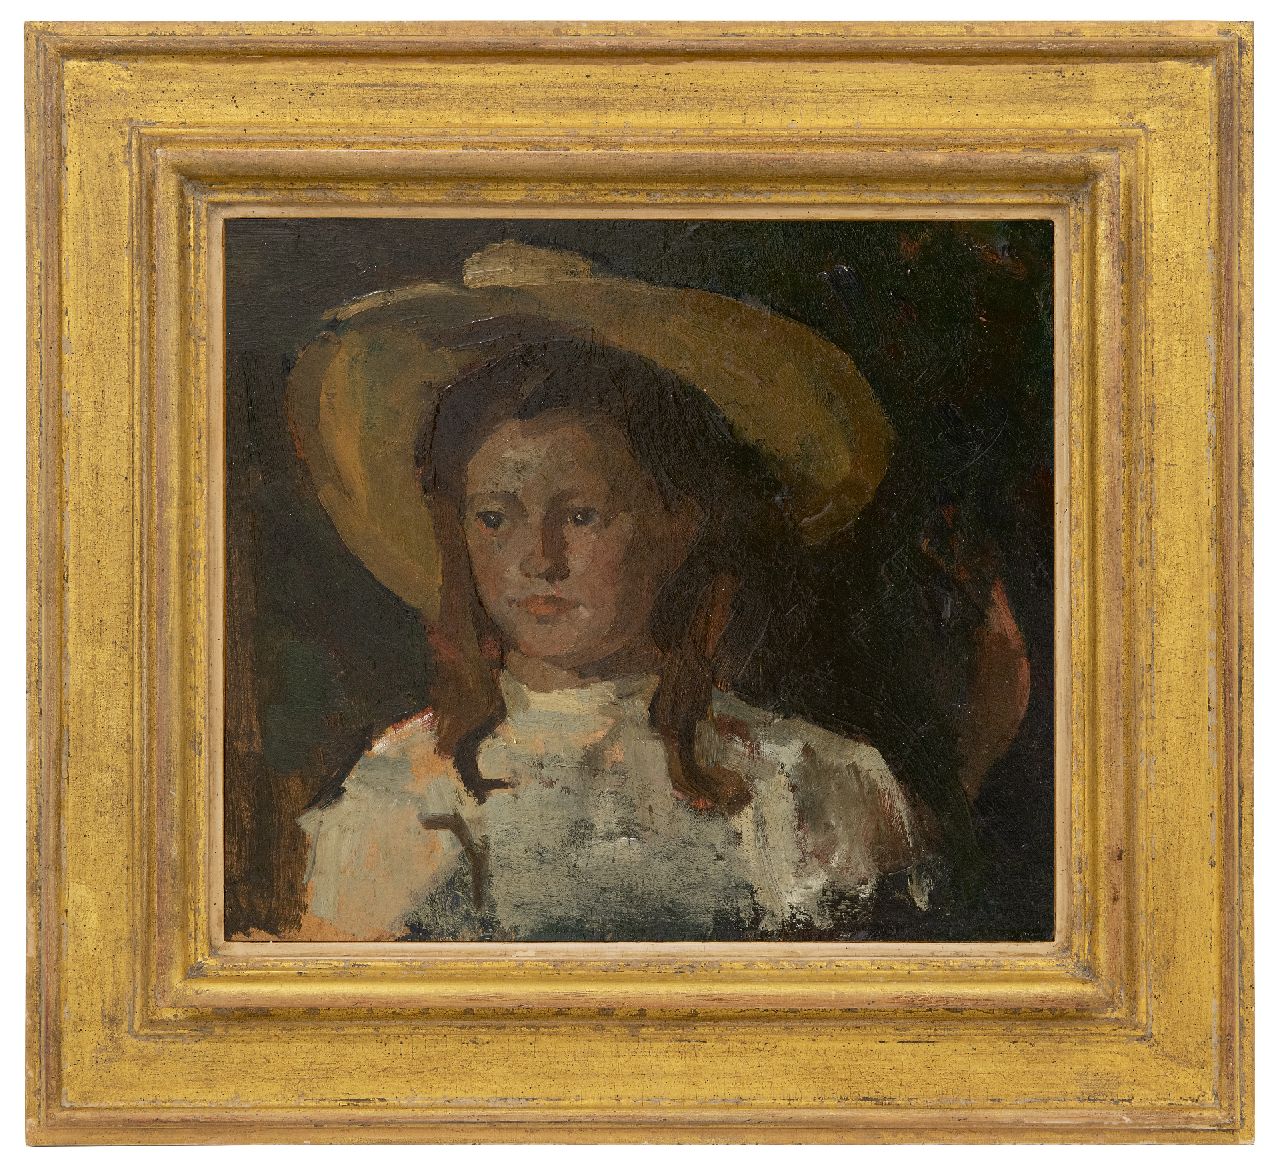 Fritzlin M.C.L.  | Maria Charlotta 'Louise' Fritzlin | Schilderijen te koop aangeboden | Fokeltje met gele hoed, olieverf op board op paneel 31,7 x 36,7 cm, te dateren 1908